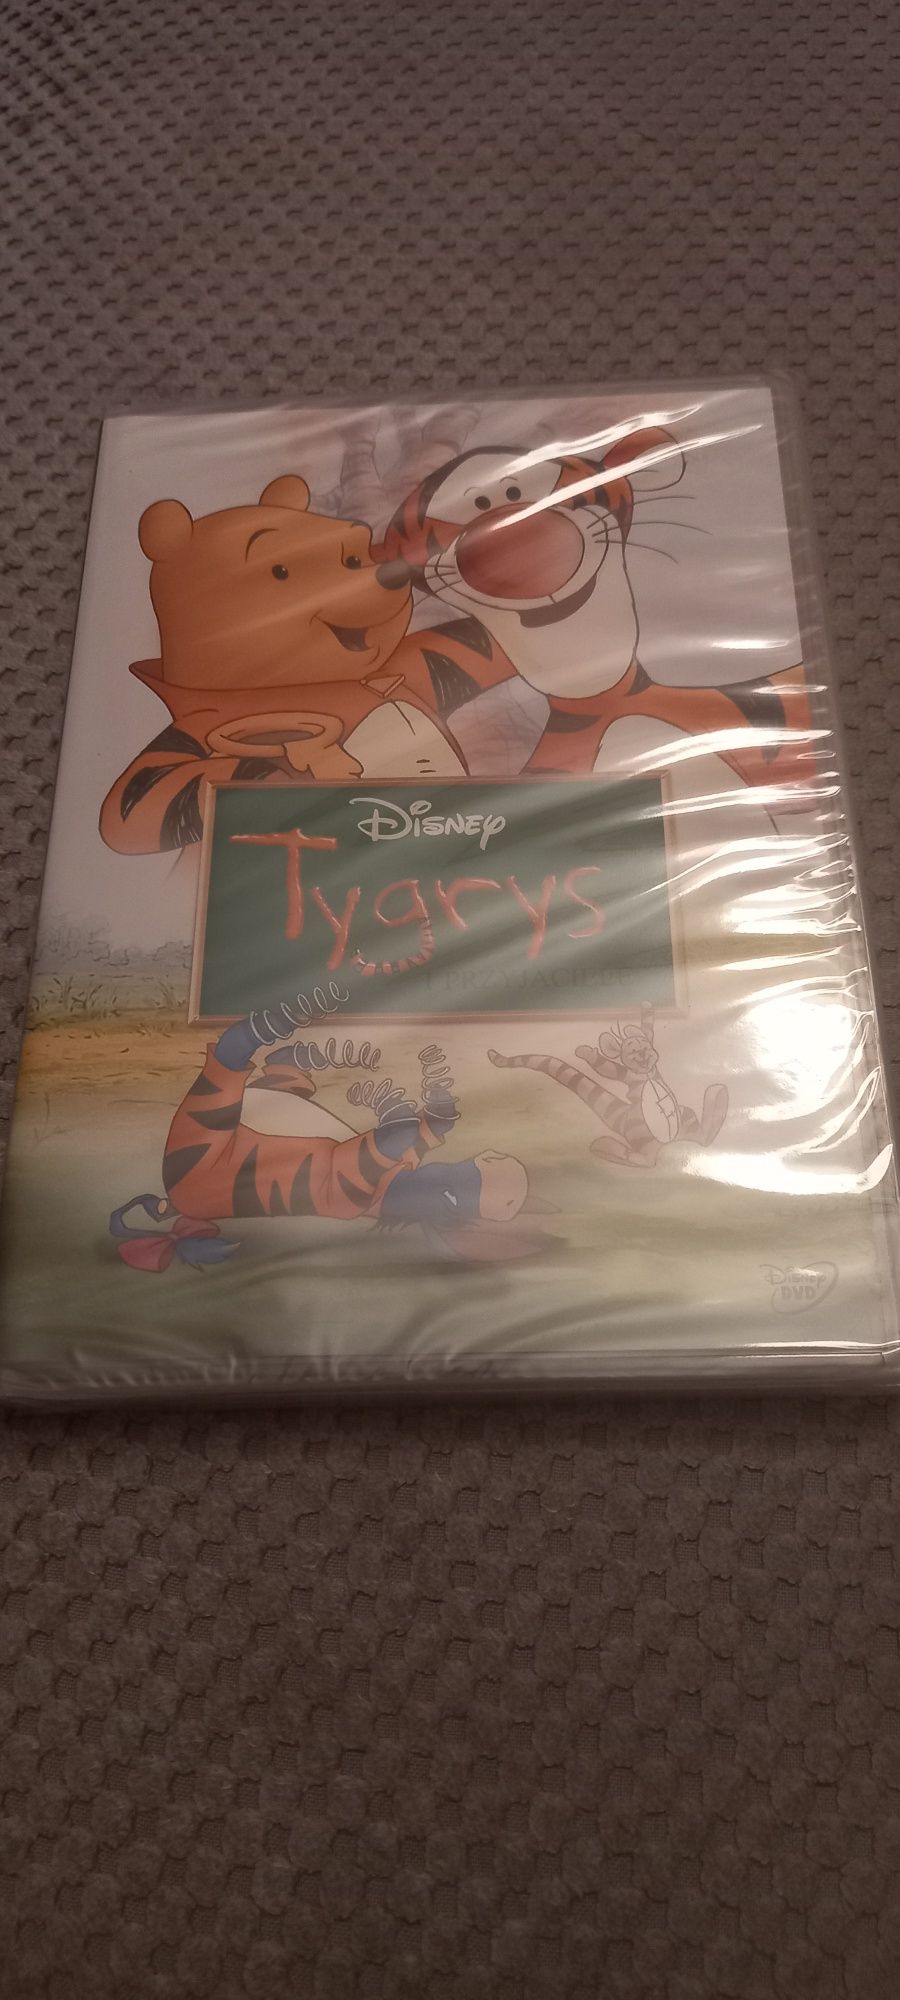 Tygrys i przyjaciele dvd